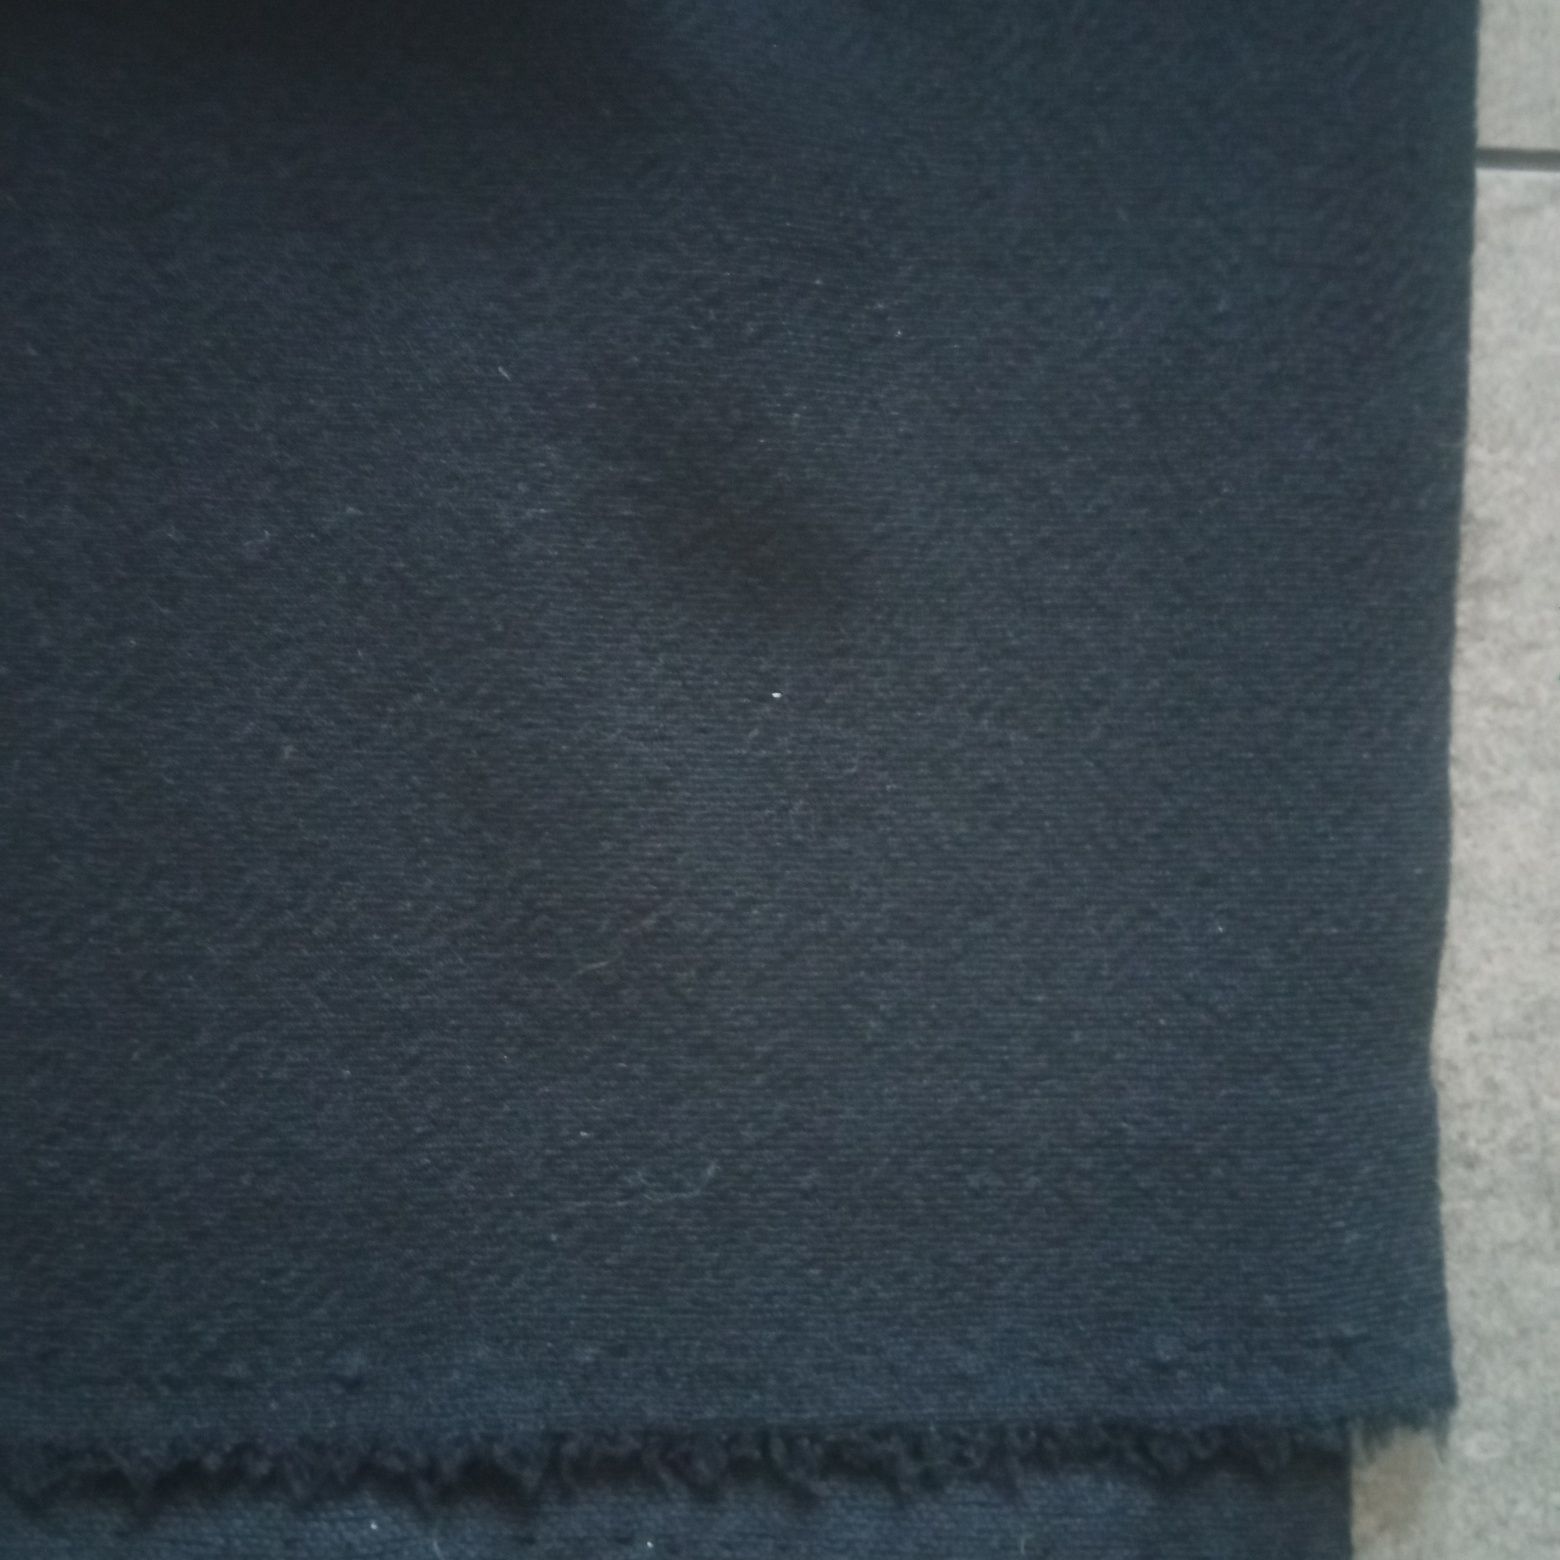 Materiał, tkanina bistorowa do szycia, kolor czarny